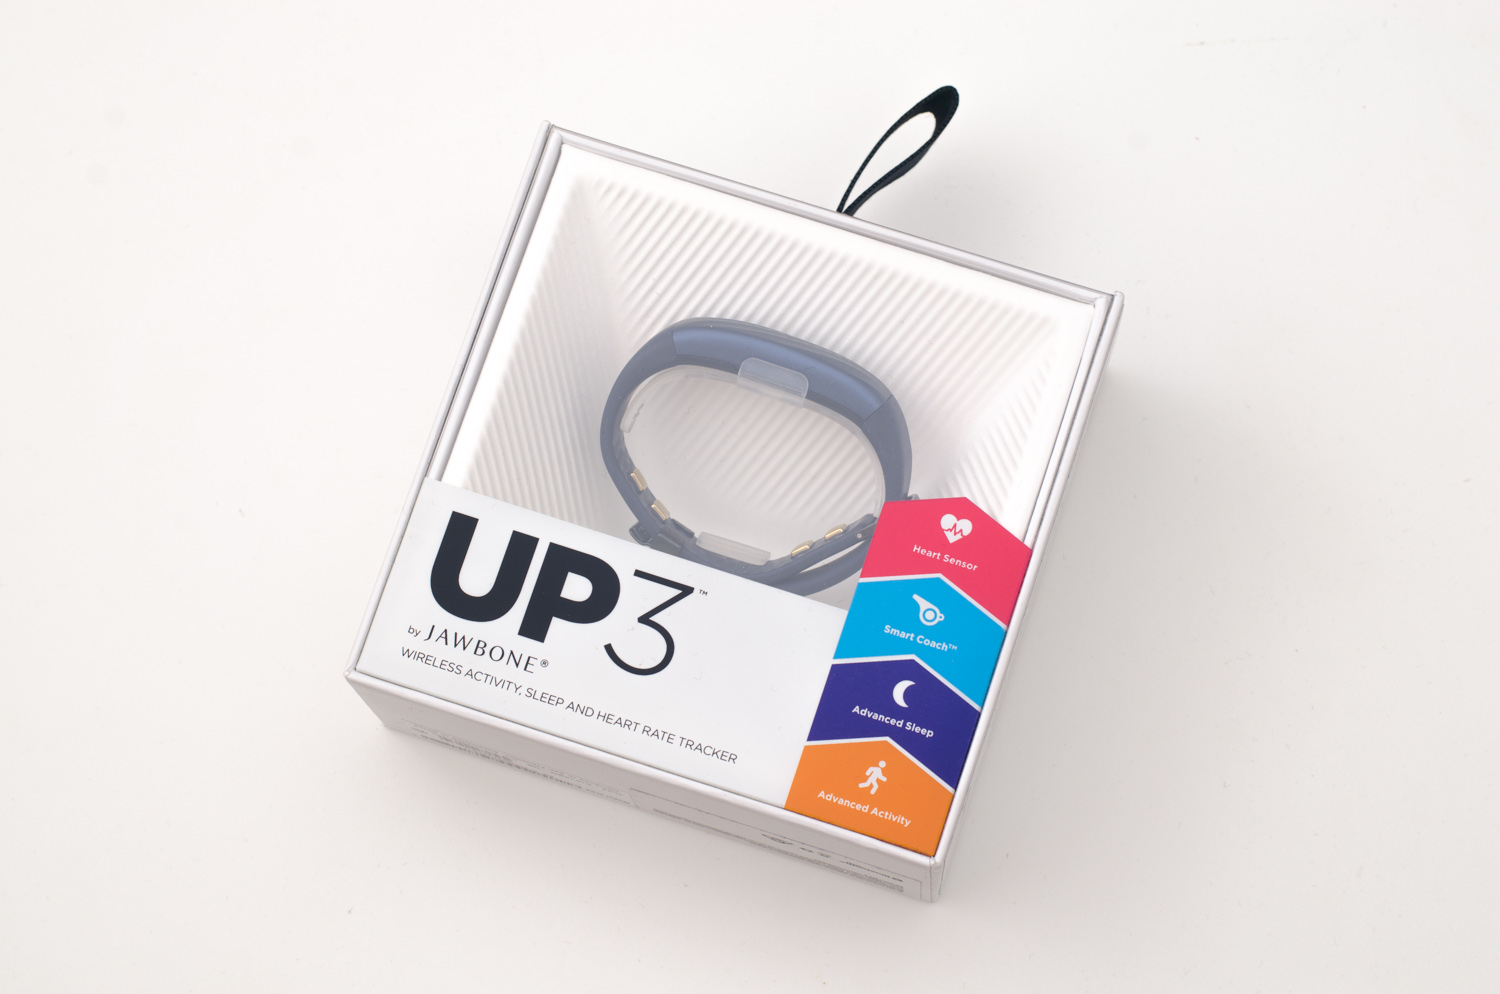 Jawbone UP3 - Verpackung (vorne)